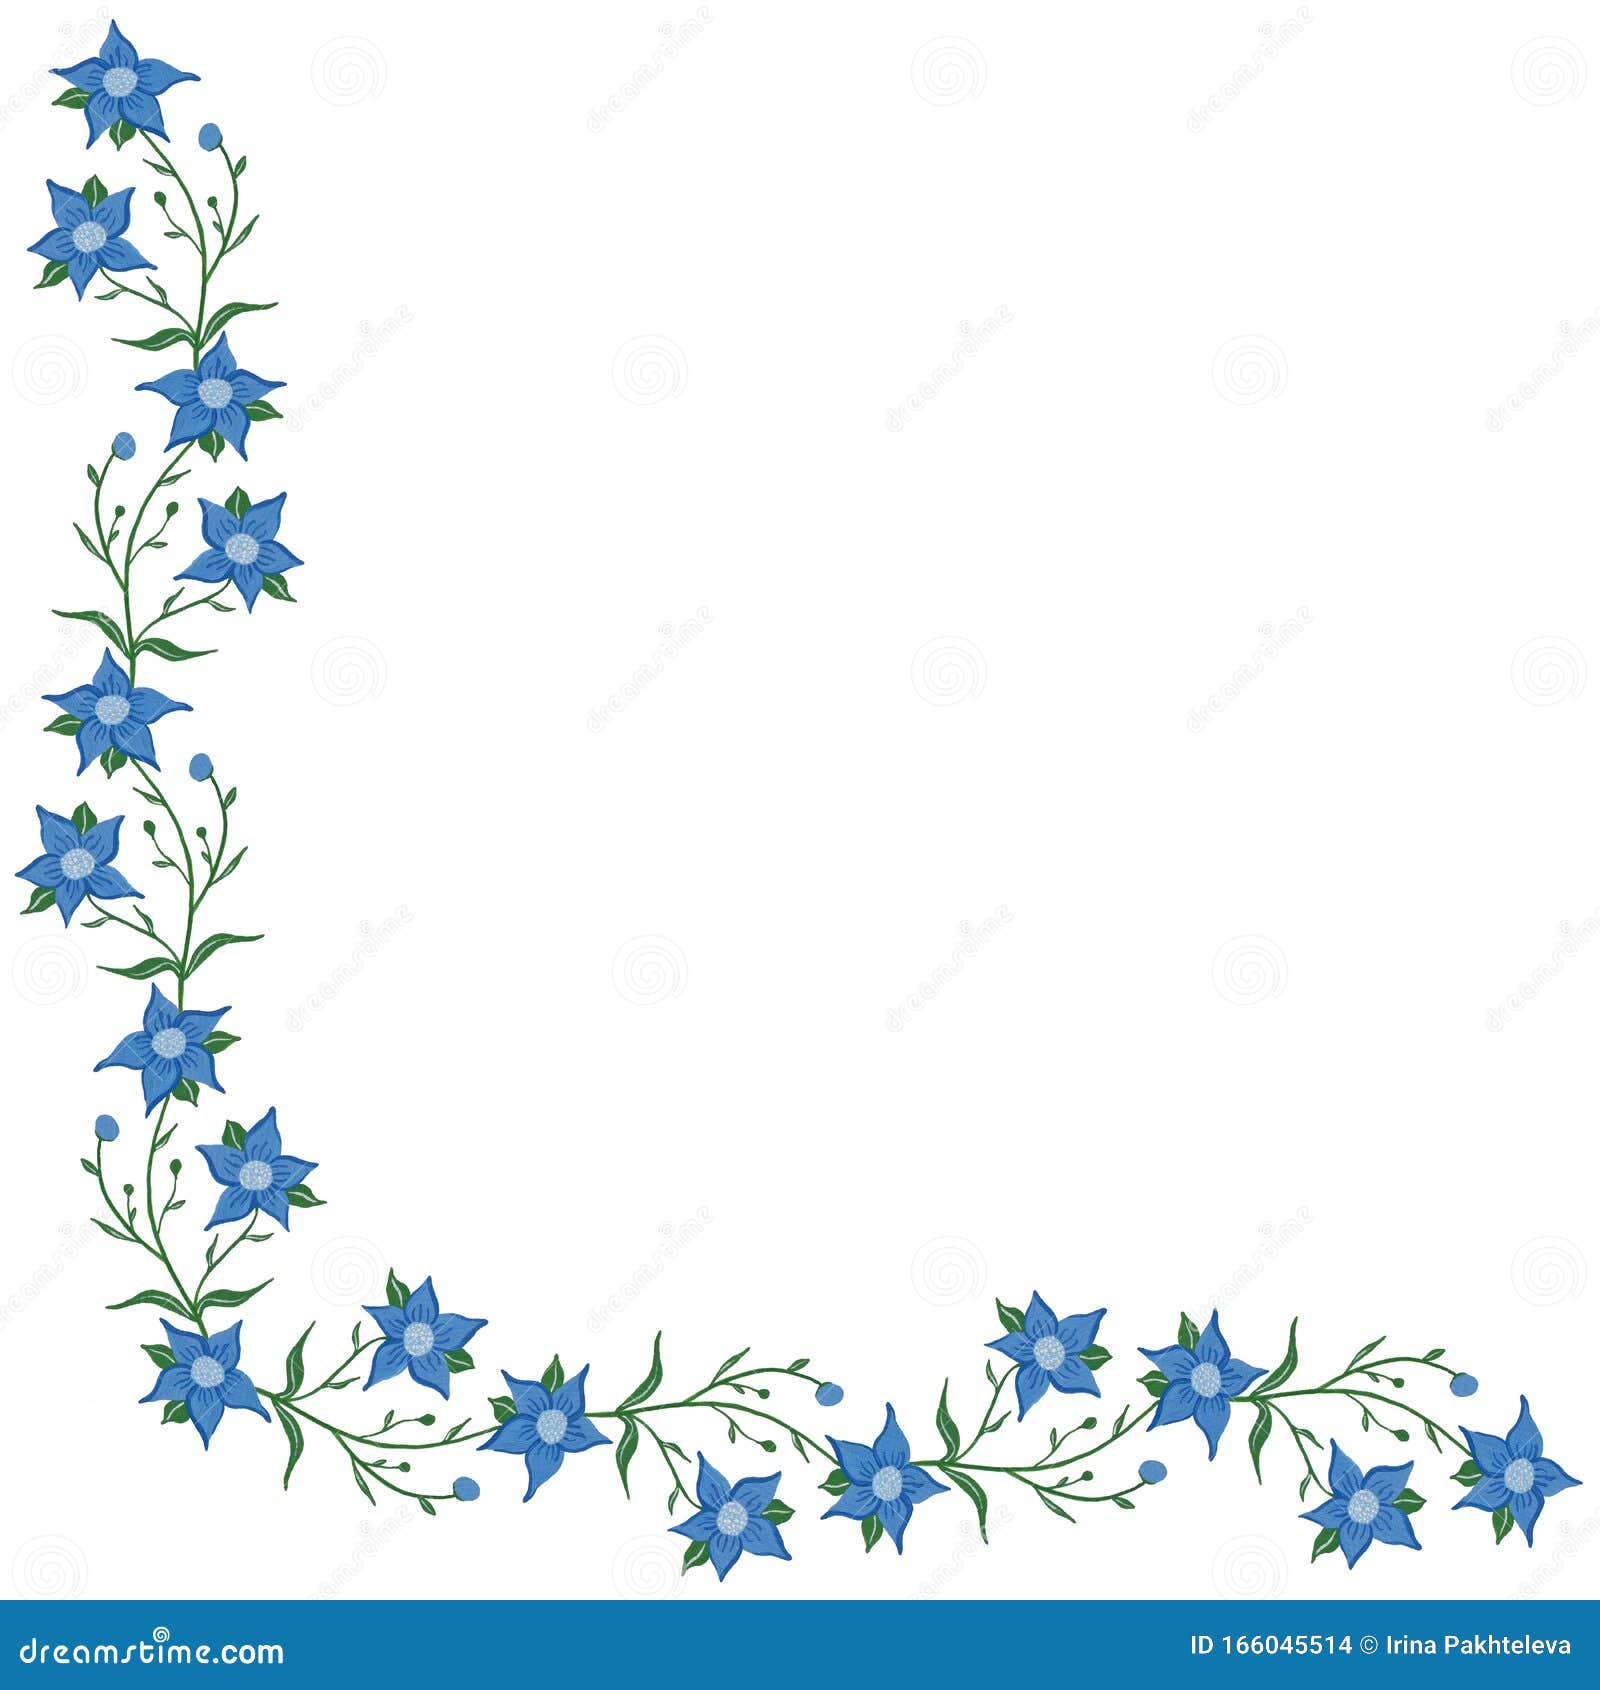 blue flower corner border